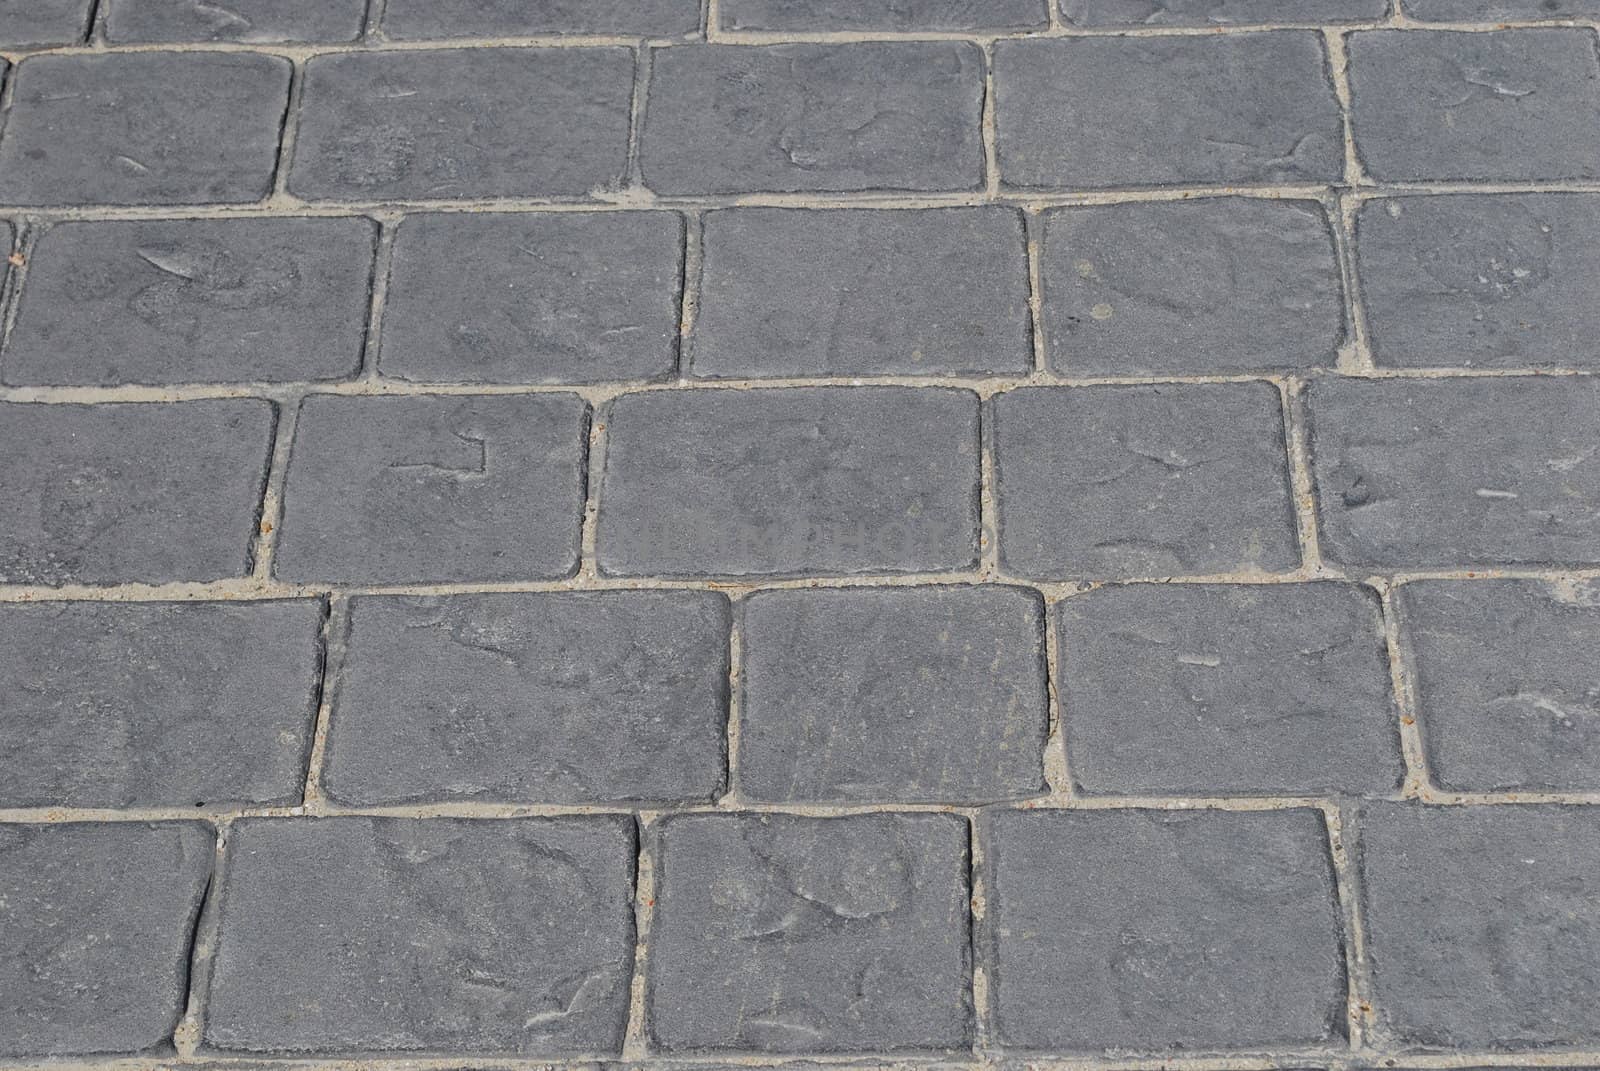 Granite pavement background by luissantos84